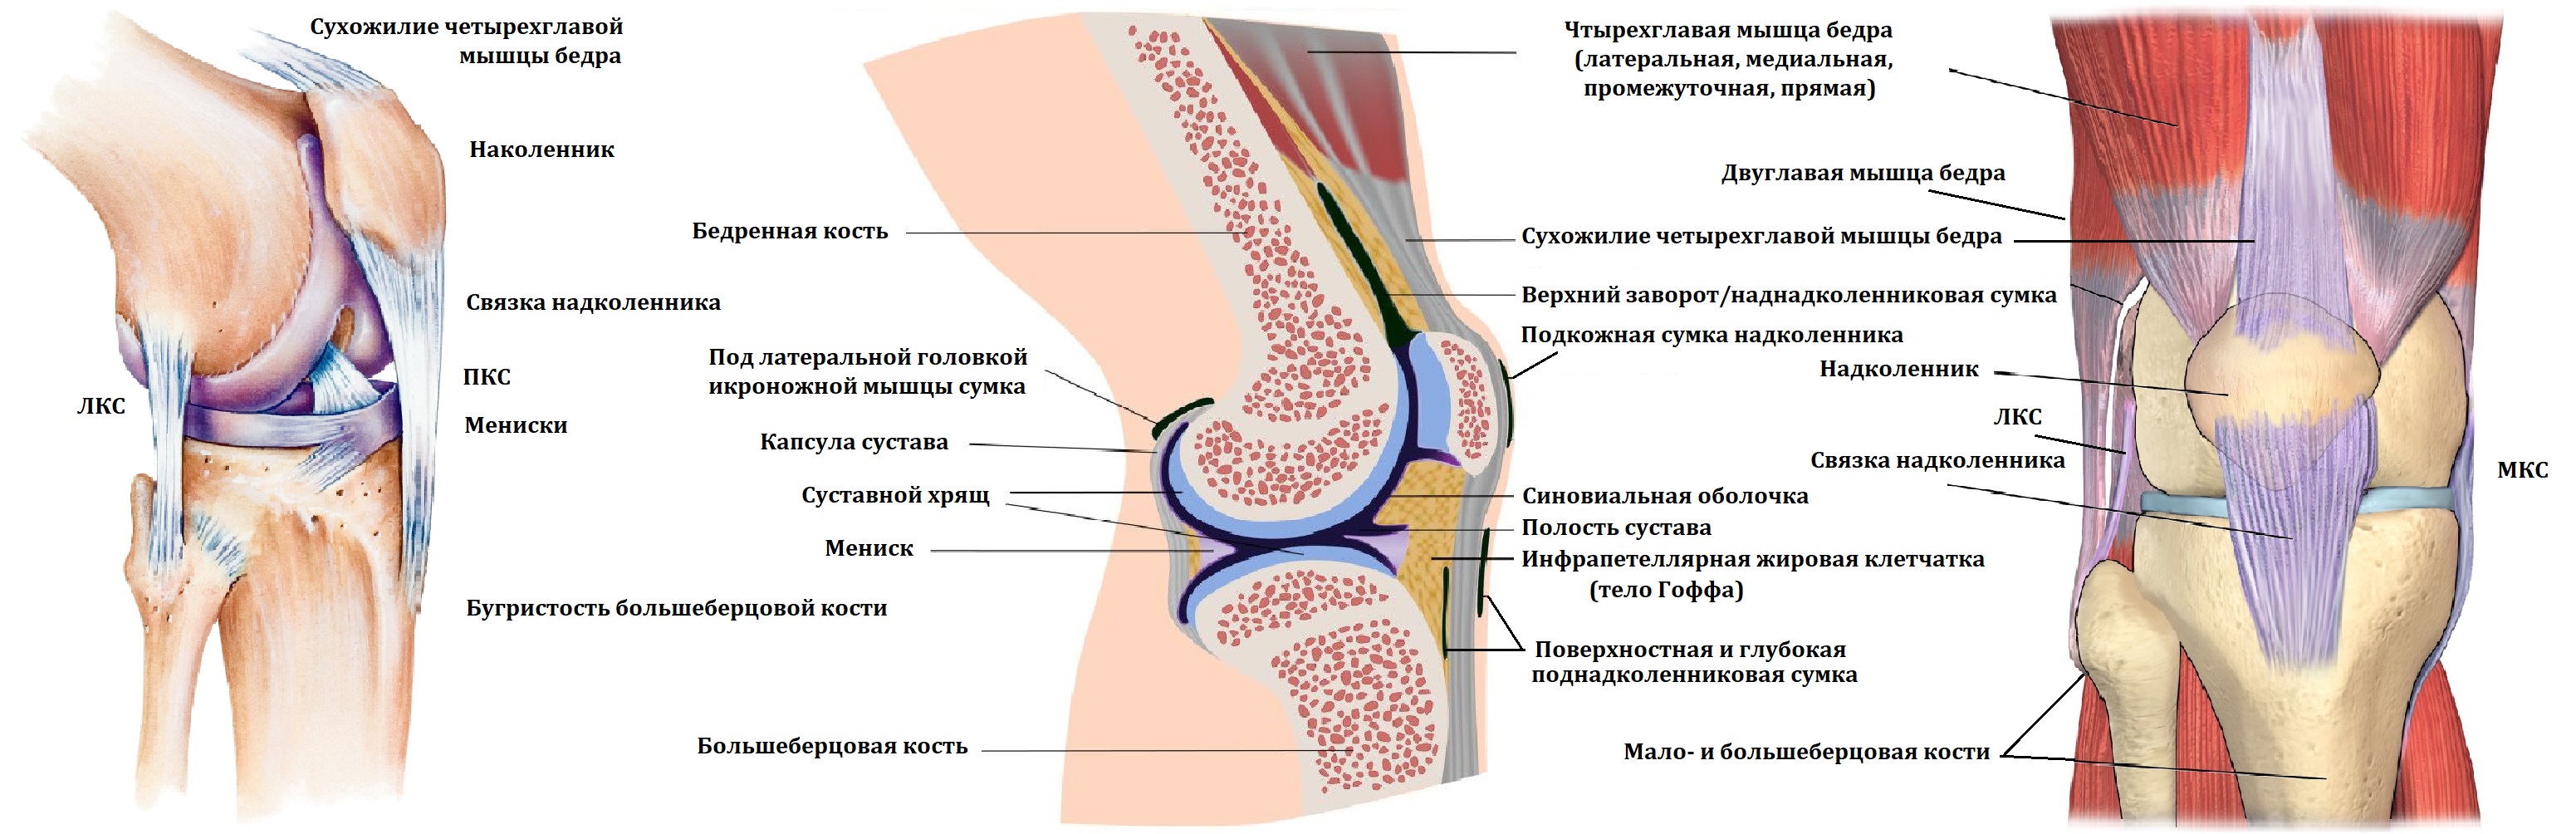 Завороты коленного сустава анатомия